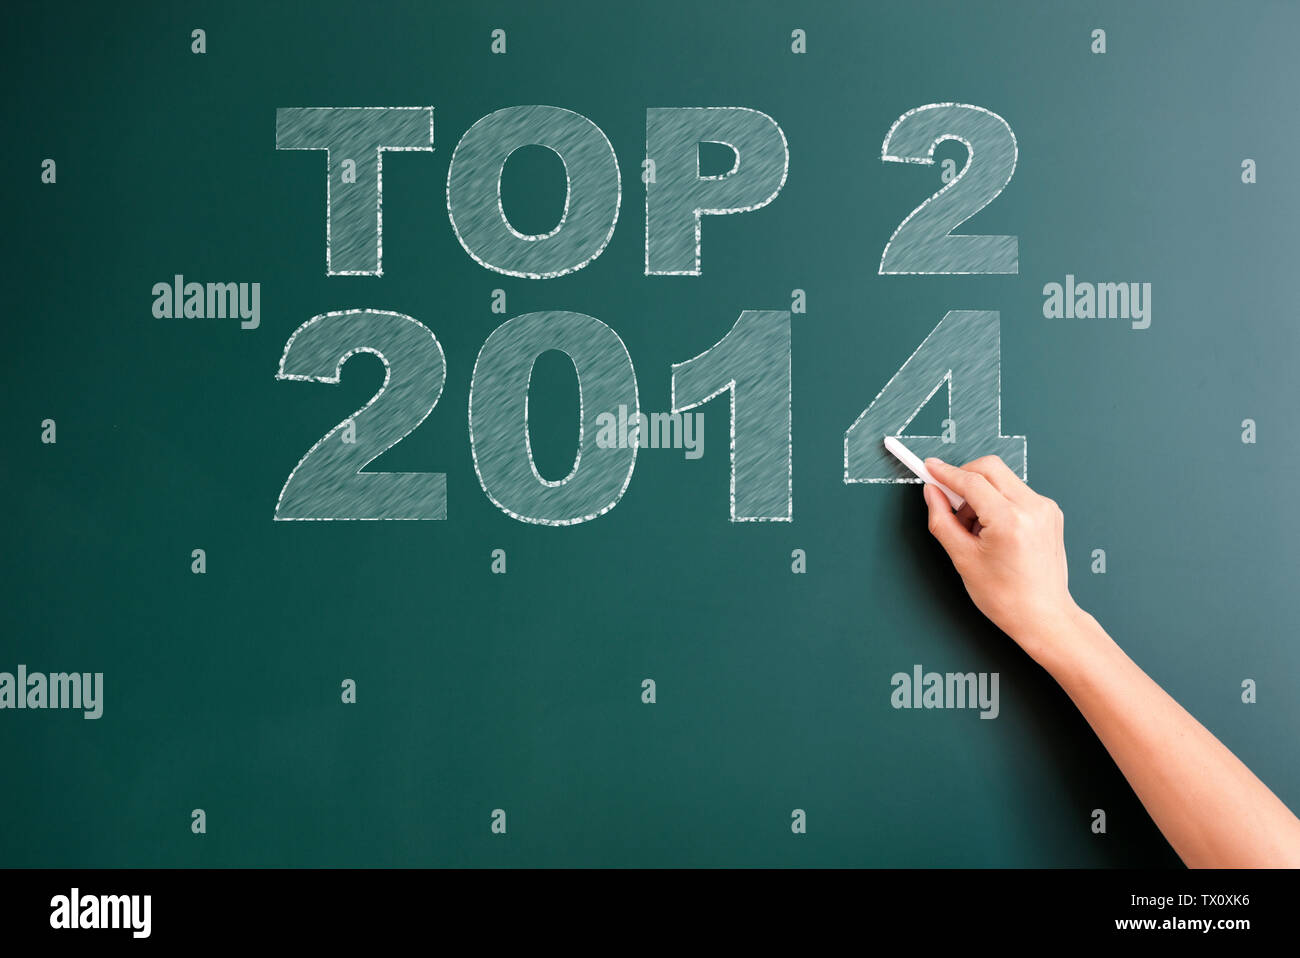 top 2 2014 written on blackboard Stock Photo